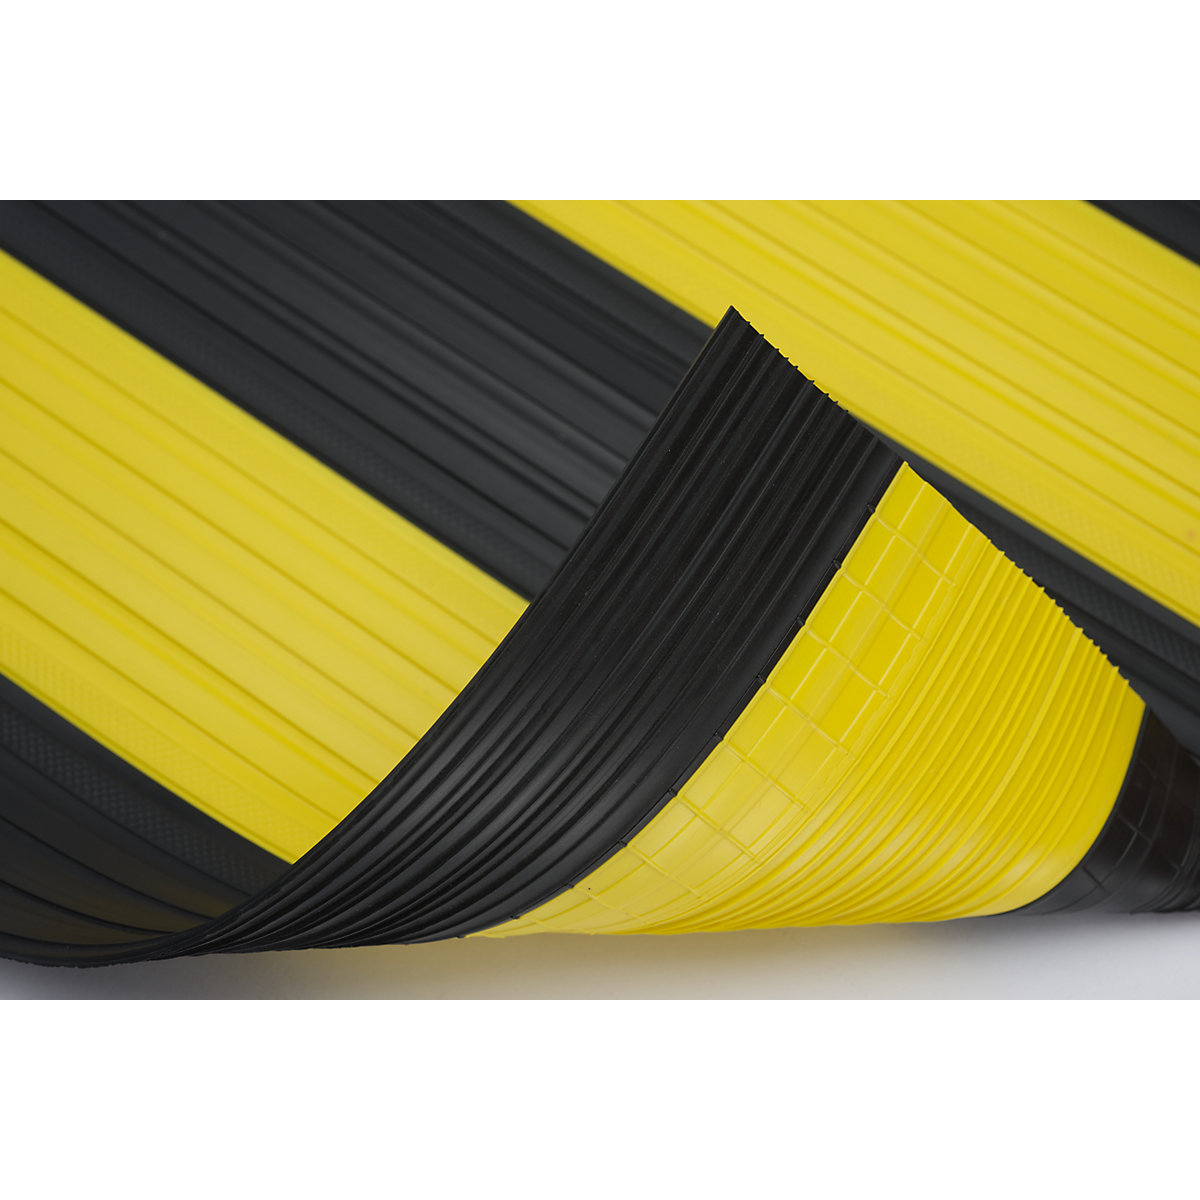 Weich-PVC-Läufer, mit geschlossener Oberfläche, 10 m Rolle, schwarz-gelb, Breite 600 mm-2